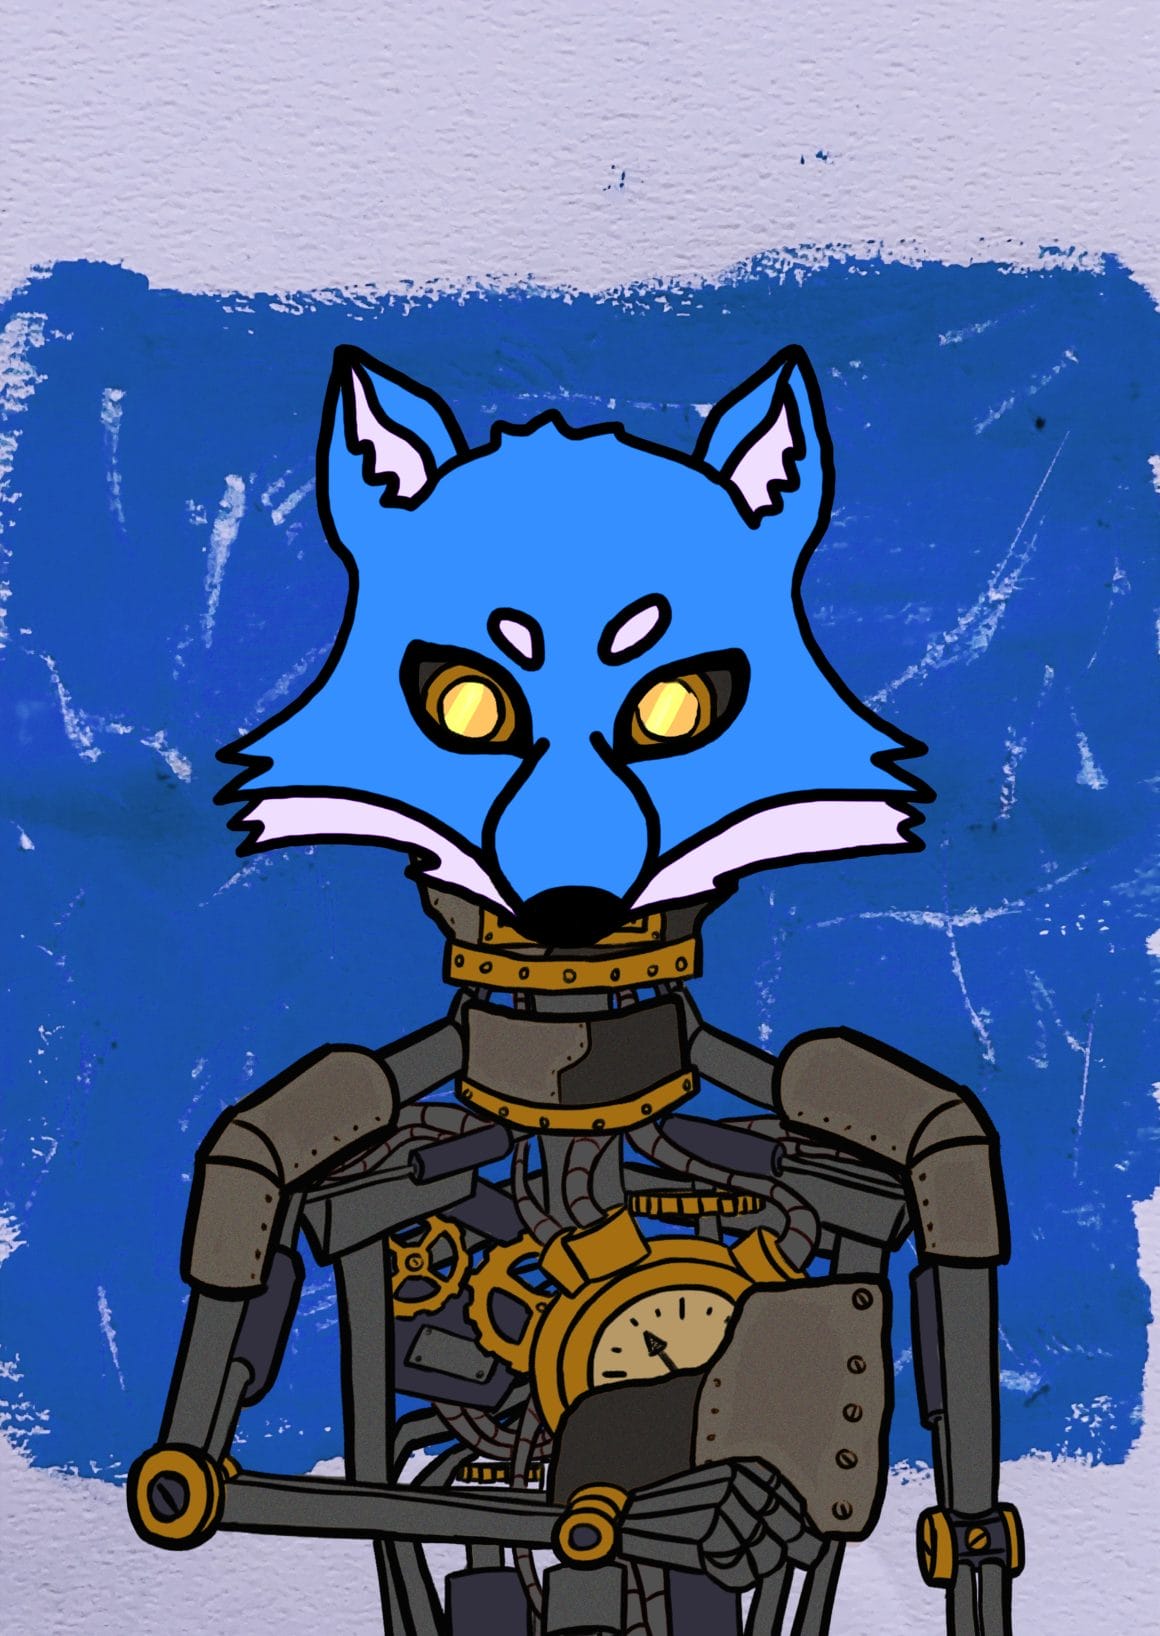 Fond bleu, personnage fait de métal avec un masque de loup bleu